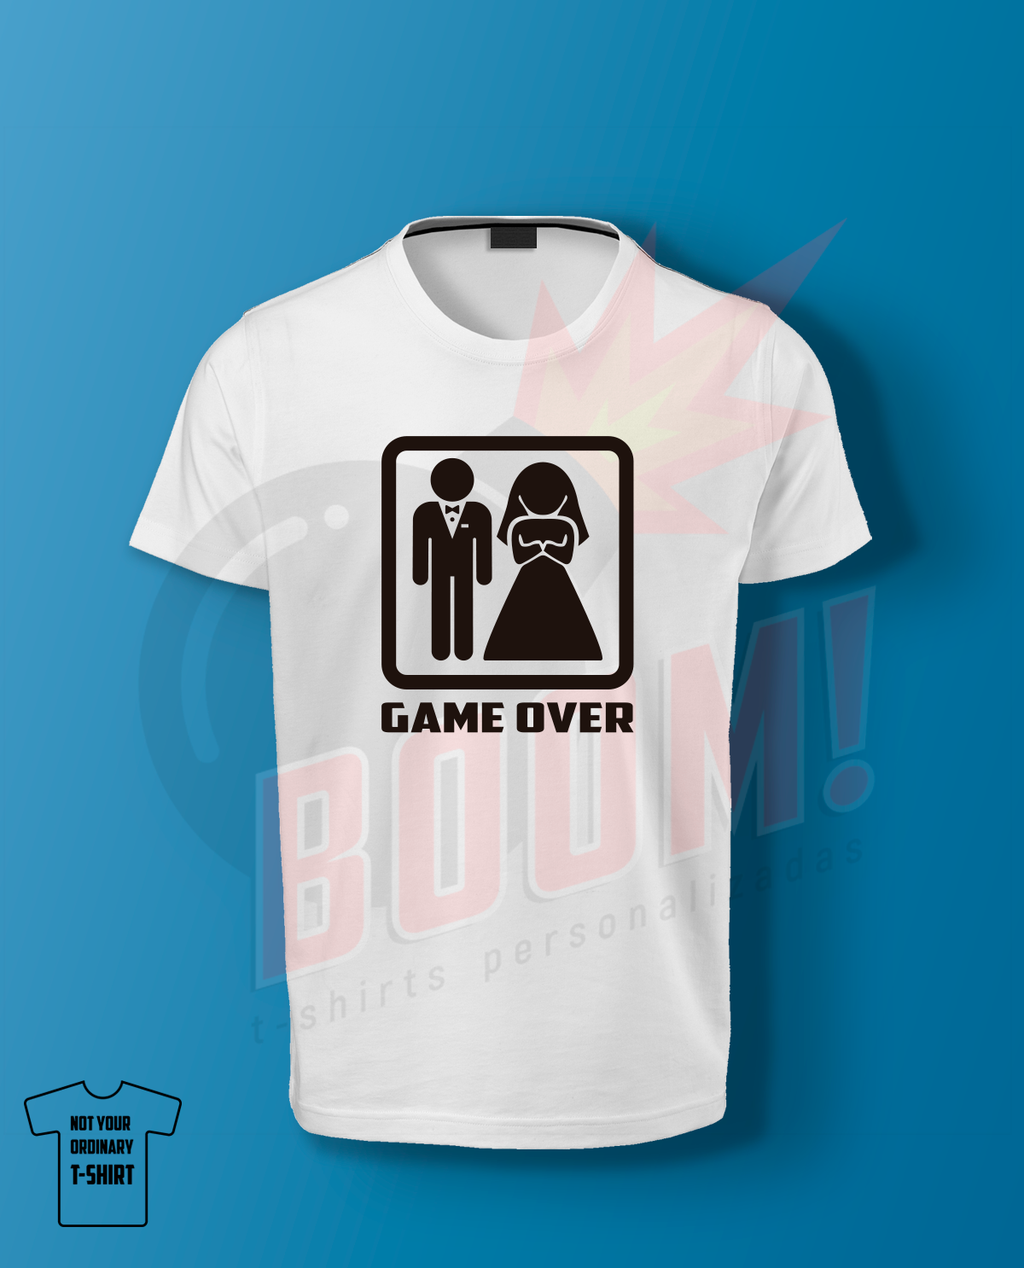 Game Over - BoomTshirtsPersonalizadas.pt